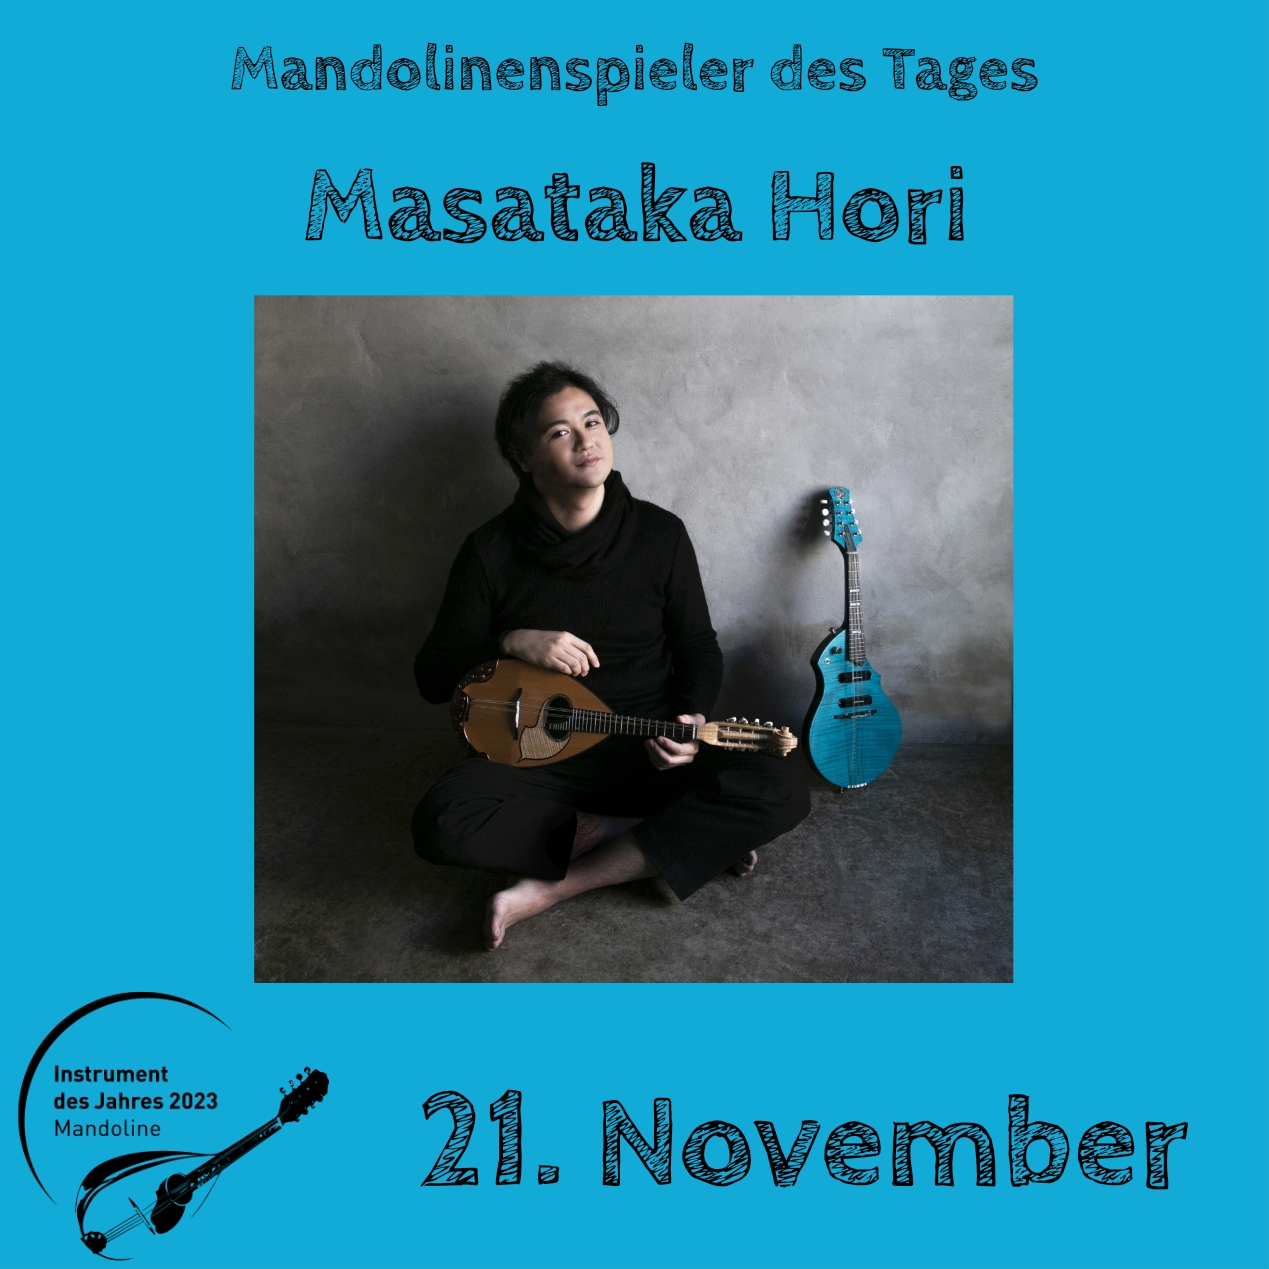 21. November - Masataka Hori Instrument des Jahres 2023 Mandolinenspieler Mandolinenspielerin des Tages